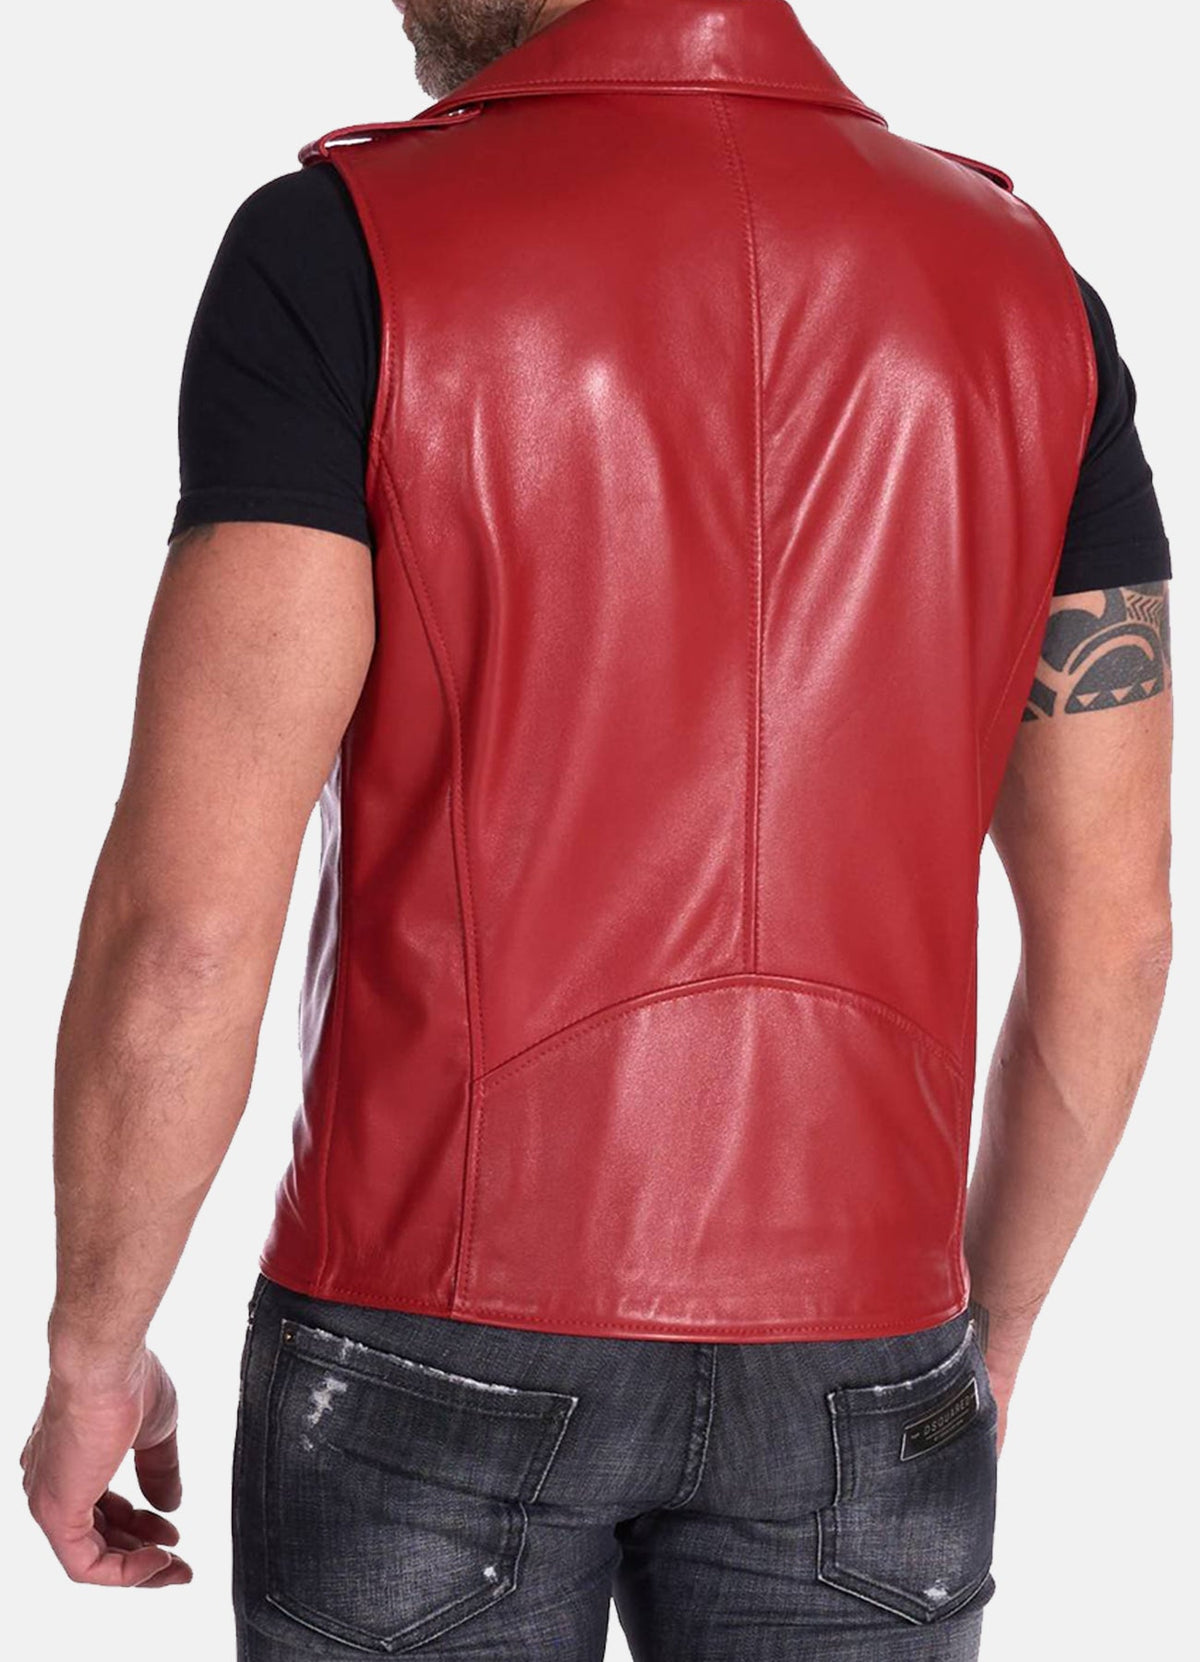 Mens Red Biker Leather Vest